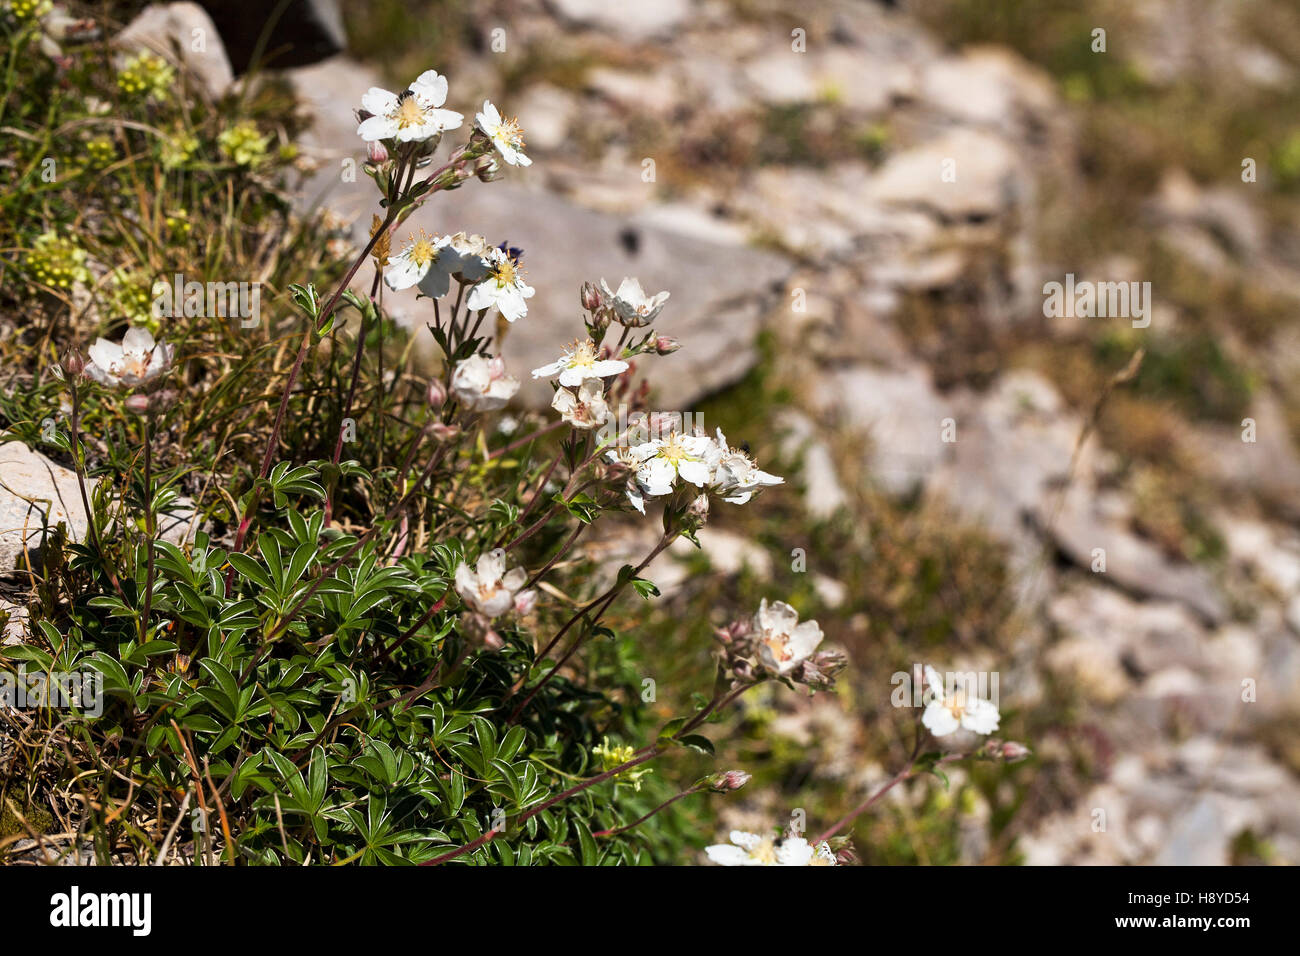 Alchemilla-leaved cinquefoil Potentilla alchimilloides Cirque de Troumouse Pyrenees National Park France July 2015 Stock Photo